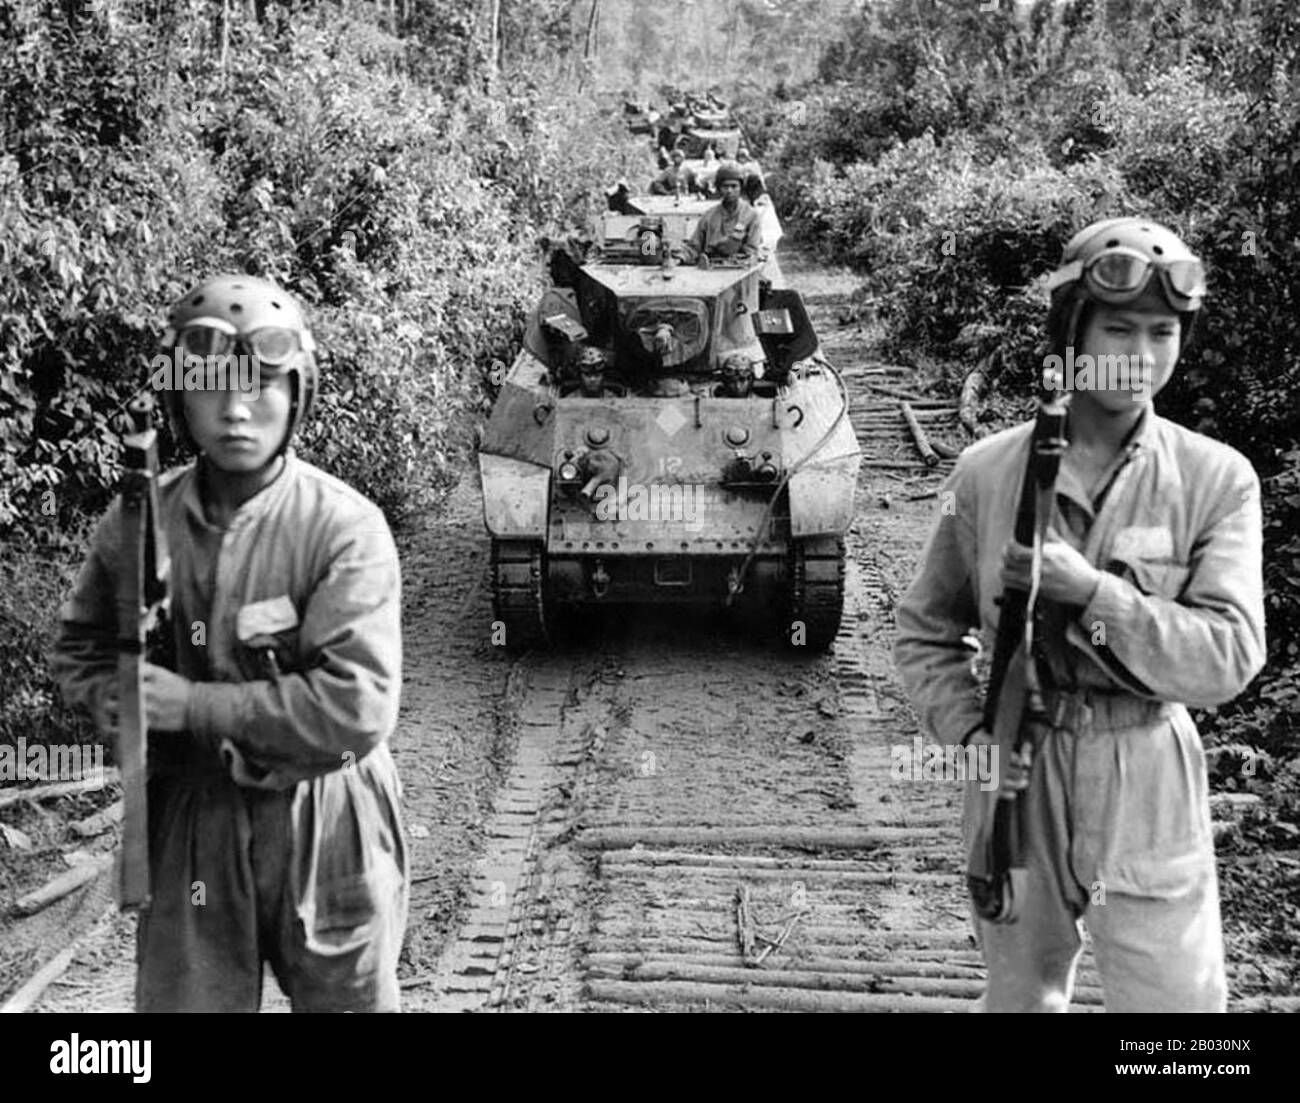 China Burma India Theatre (CBI) war die Bezeichnung, die von der United States Army für ihre Streitkräfte verwendet wurde, die im zweiten Weltkrieg zusammen mit den britischen und chinesischen alliierten Luft- und Landstreitkräften in China, Birma und Indien tätig waren Zu den bekannten US-Einheiten in diesem Theater gehörten die Flying Tigers, Transport- und Bombereinheiten, die den Hump fliegen, die 1st Air Commando Group, die Ingenieure, die Ledo Road gebaut haben, und die 5307th Composite Unit (Provisional), die ansonsten als Merrill's Marauders bekannt war. Stockfoto